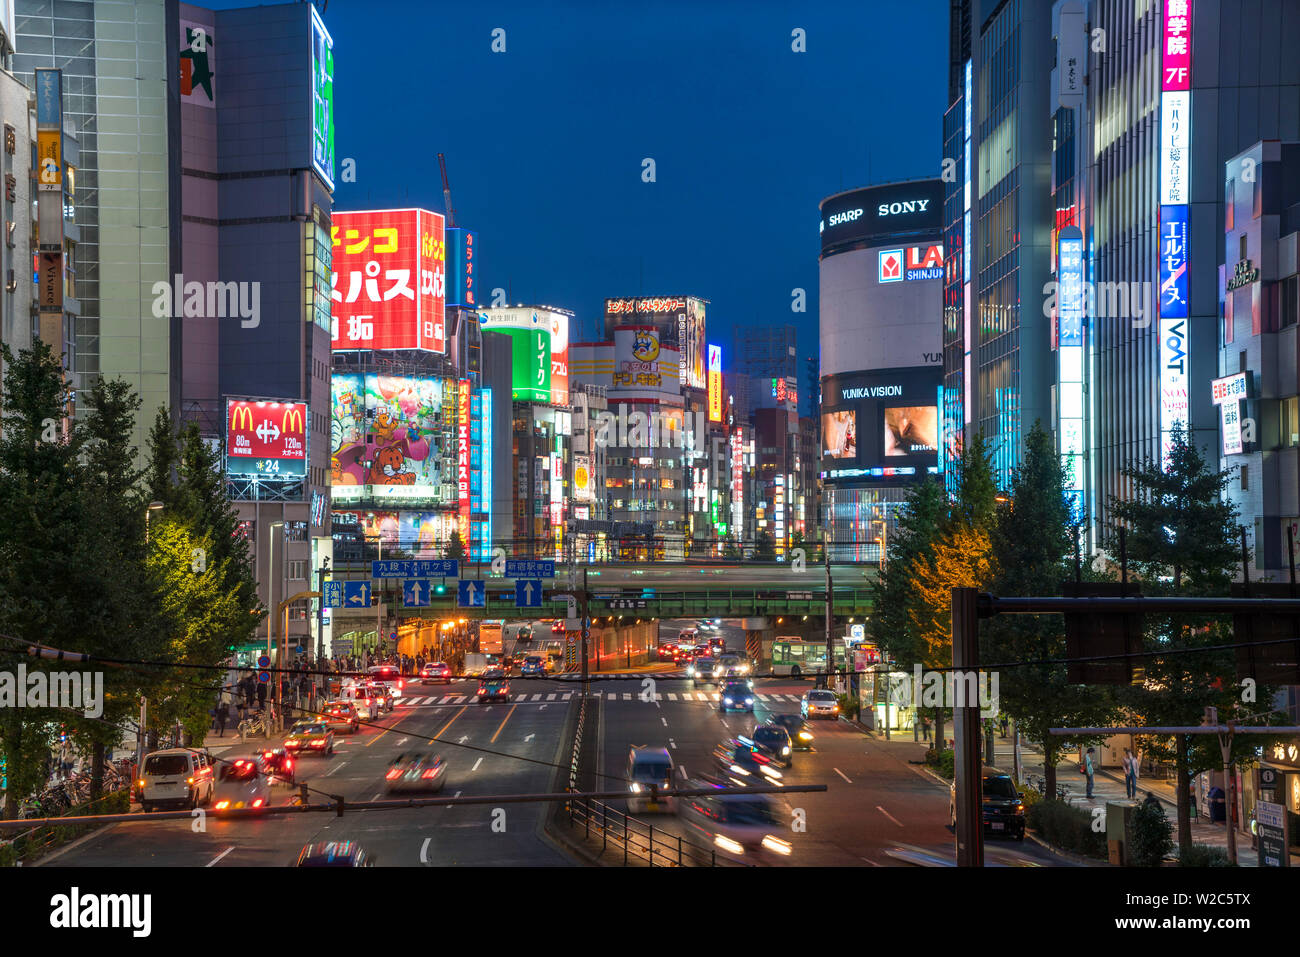 Shinjuku district at night, Tokyo, Japan Stock Photo